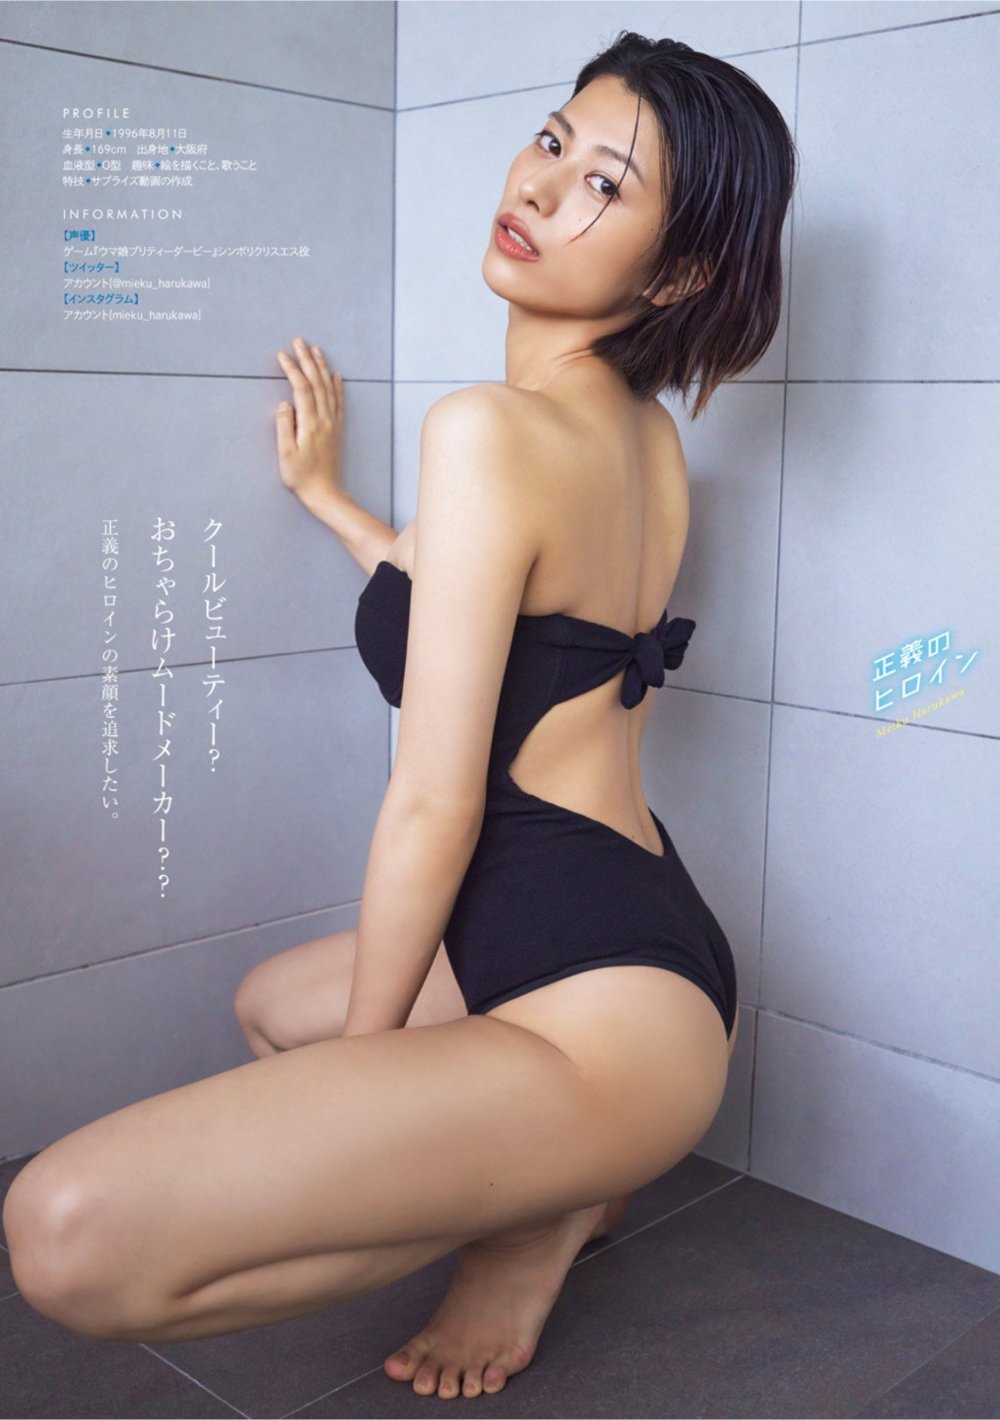 春川芽生 Sexy and Hottest Photos , Latest Pics